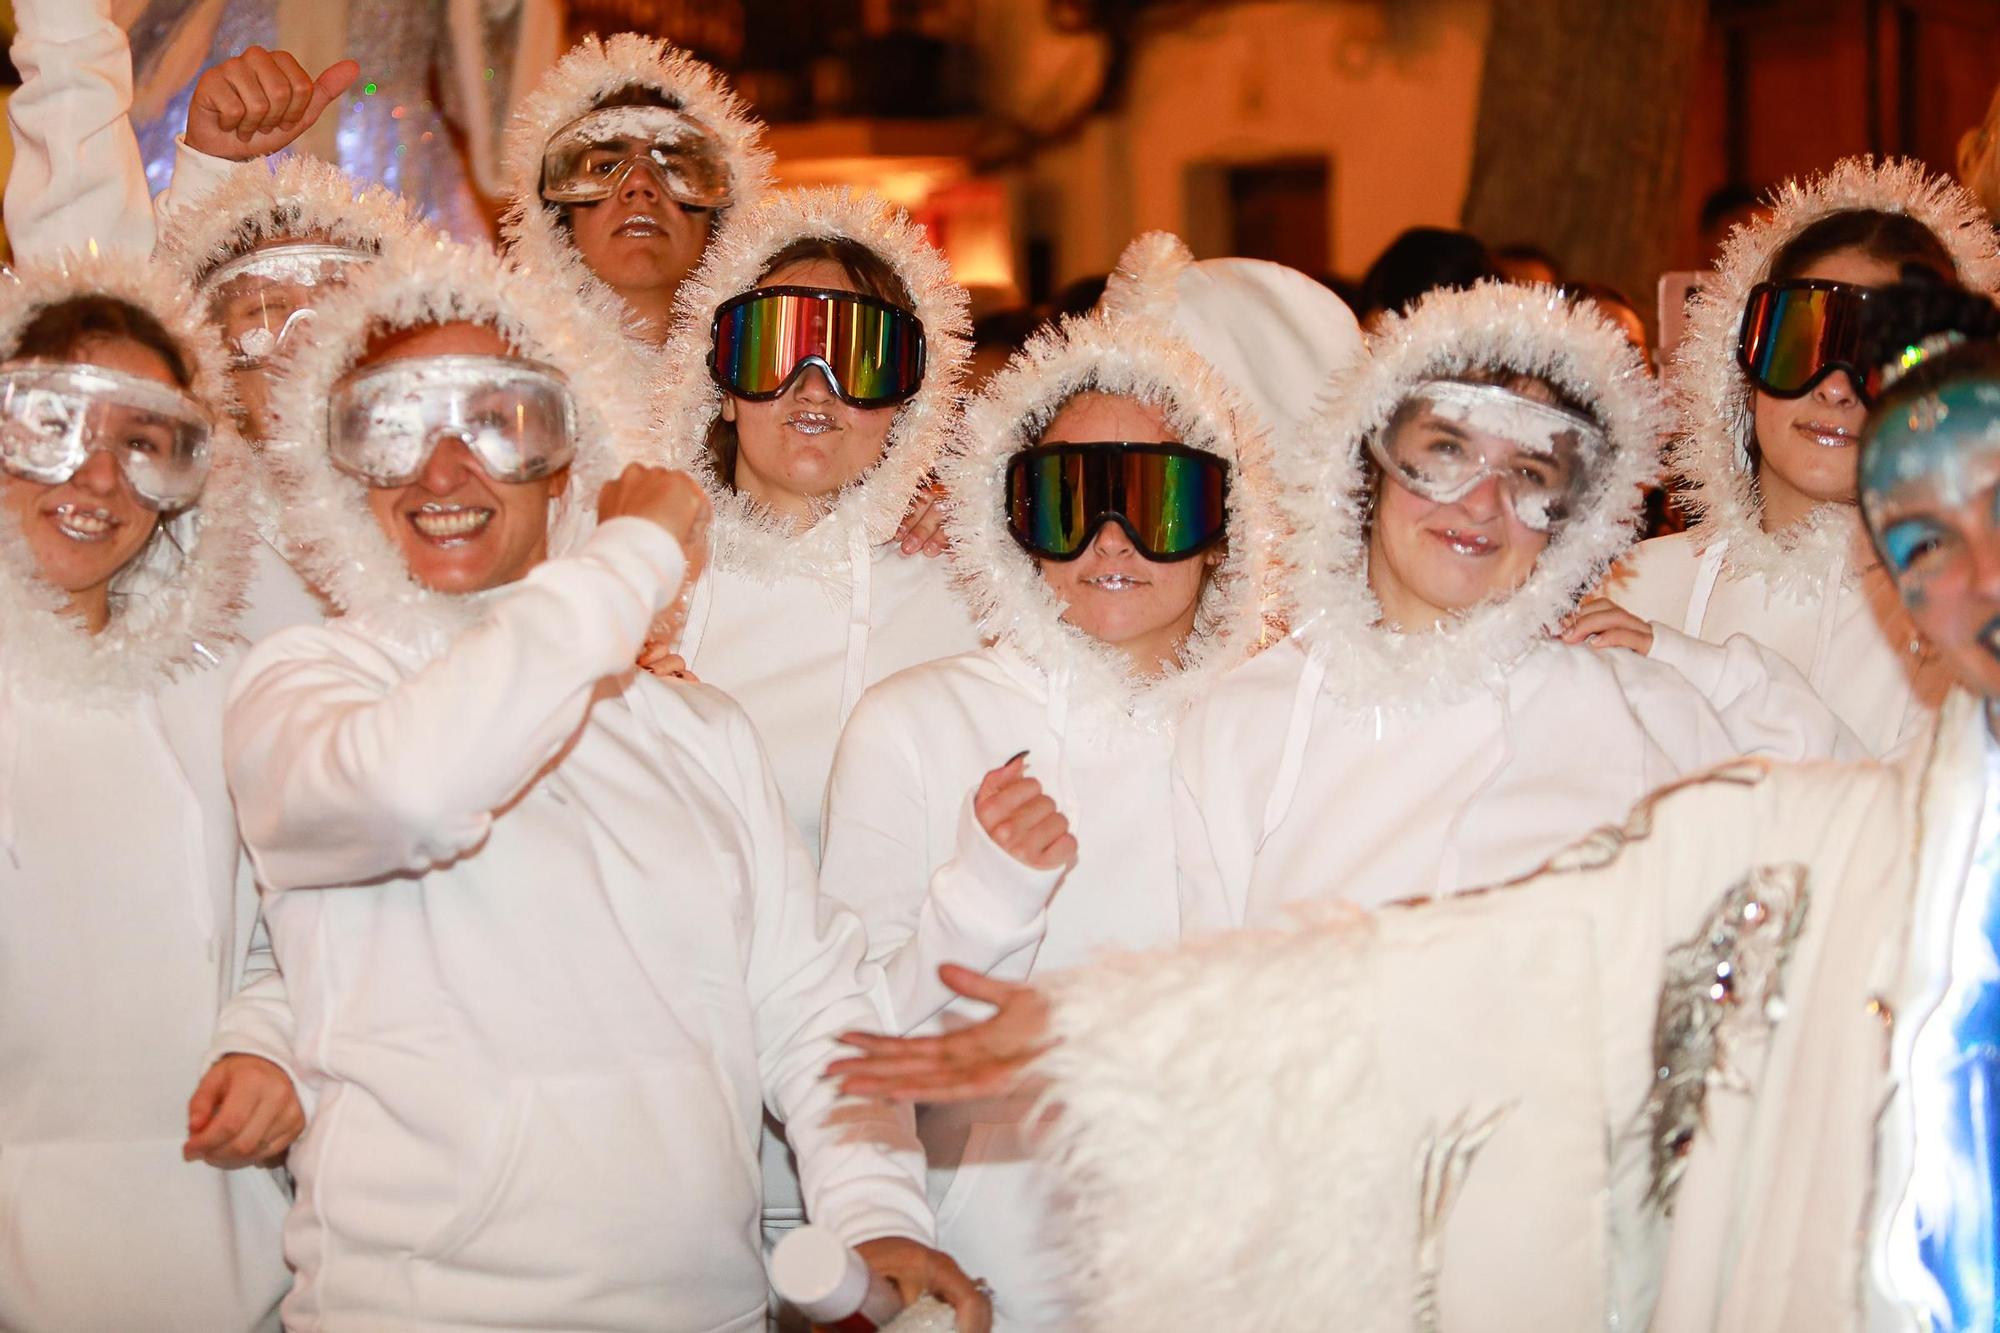 Mira aquí todas las fotos del encendido de las luces de Navidad en Ibiza